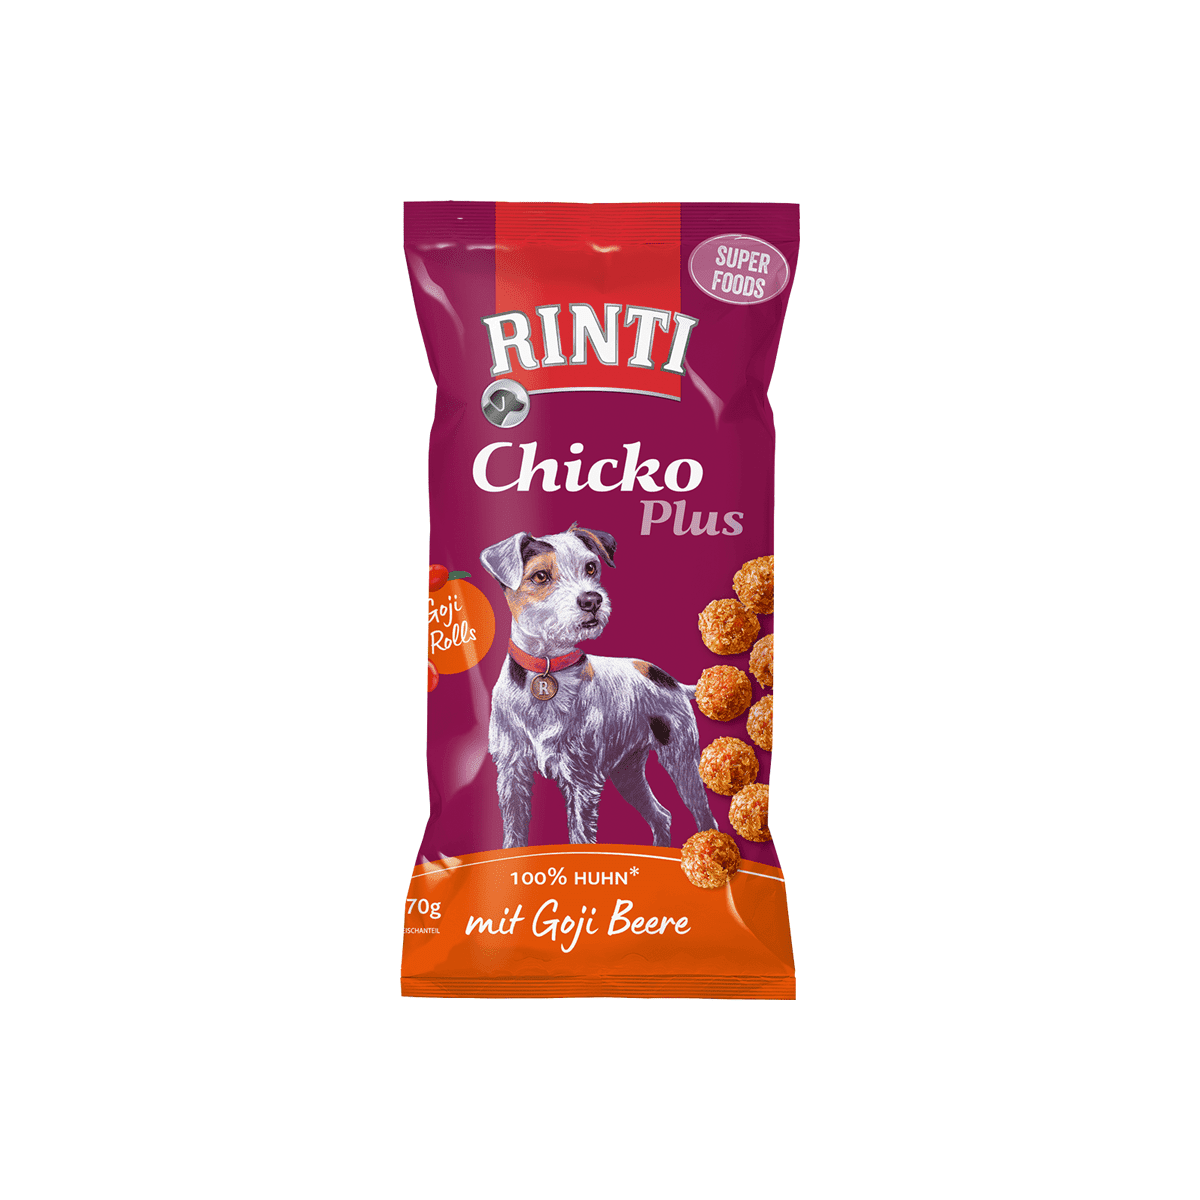 Artikel mit dem Namen Rinti Chicko Plus Superfoods mit Goji Beere im Shop von zoo.de , dem Onlineshop für nachhaltiges Hundefutter und Katzenfutter.